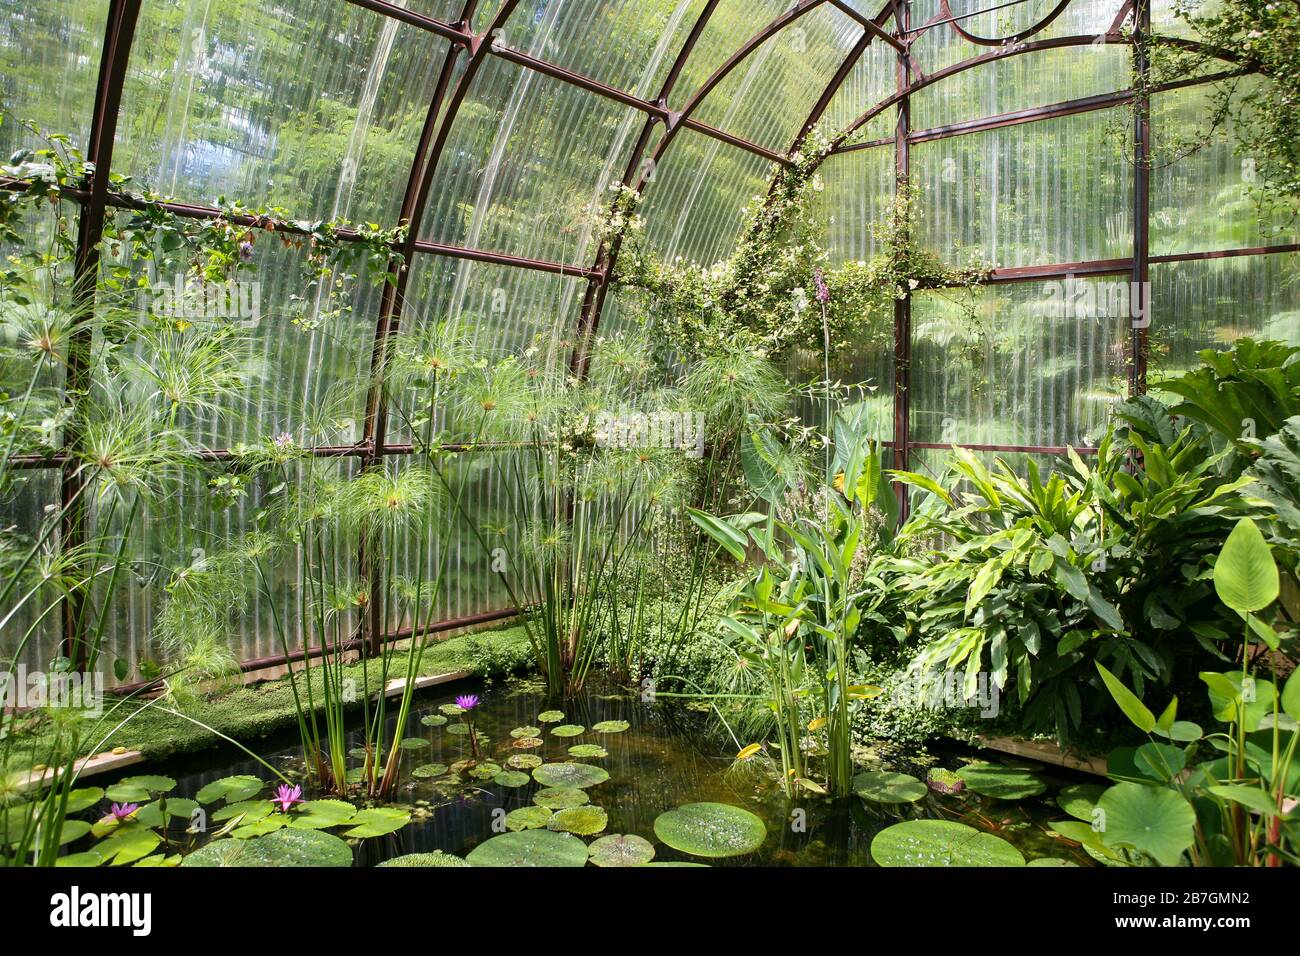 Plantas acuáticas creciendo en una característica de agua, dentro de un invernadero Foto de stock